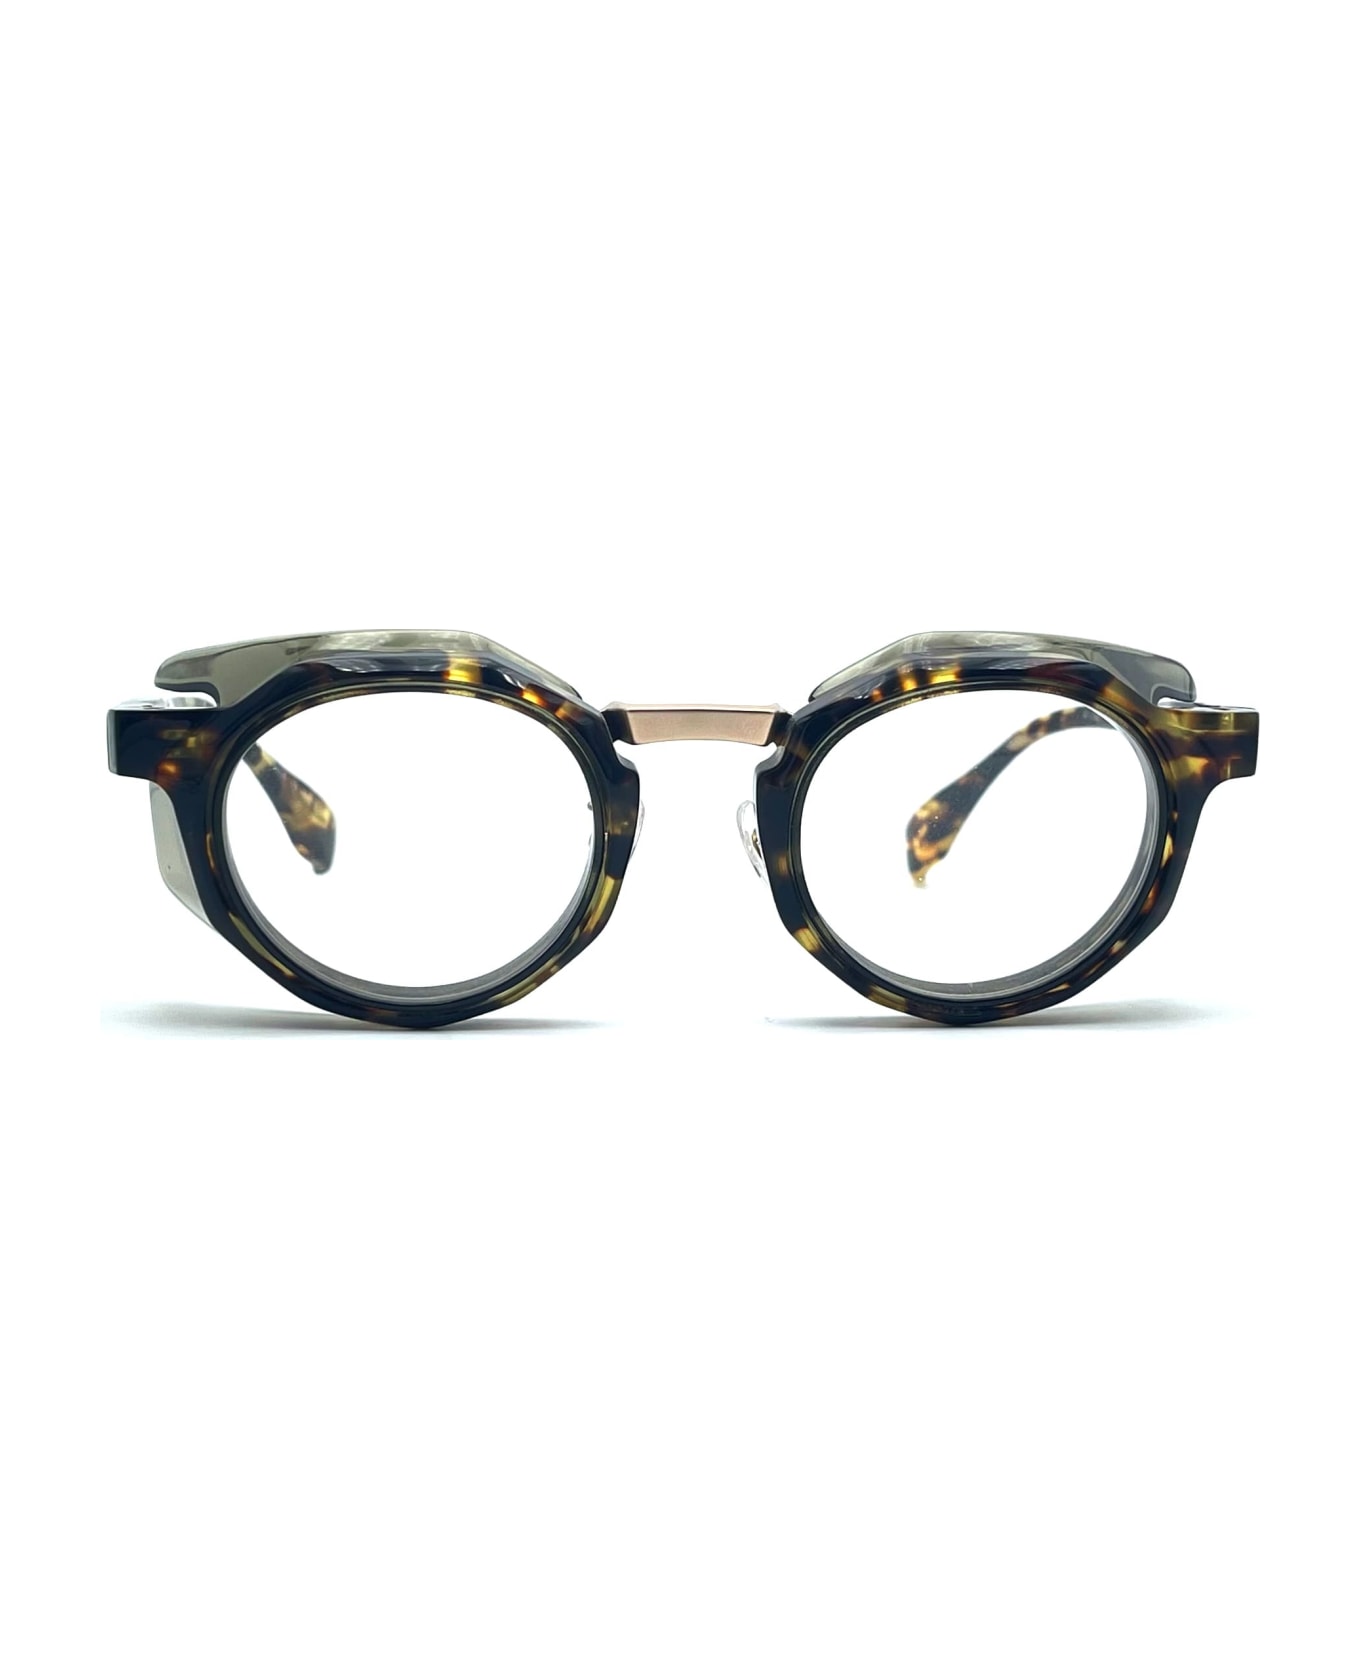 FACTORY900 Rf-056 - Tortoise / Olive Green Glasses - Tortoise アイウェア